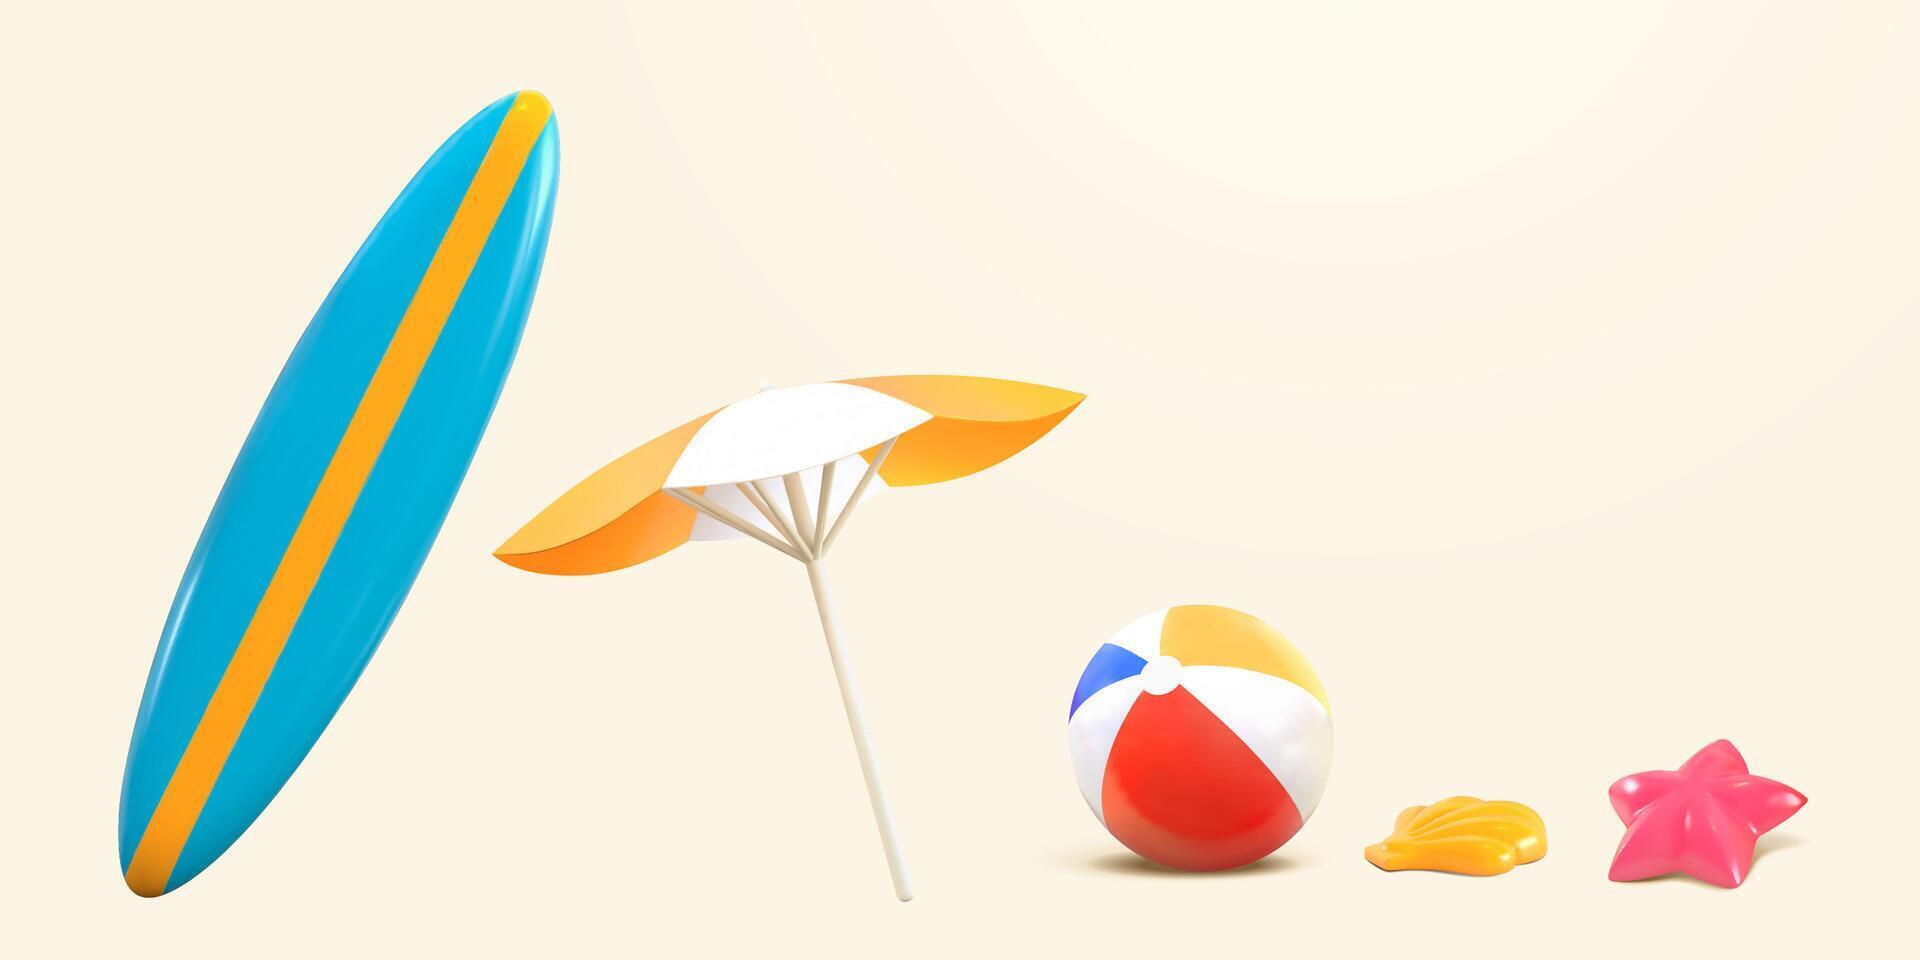 3d elementen van zomer strand voorwerpen. items gebruikt voor zonnen, buitenshuis activiteiten, of vrije tijd recreatie vector